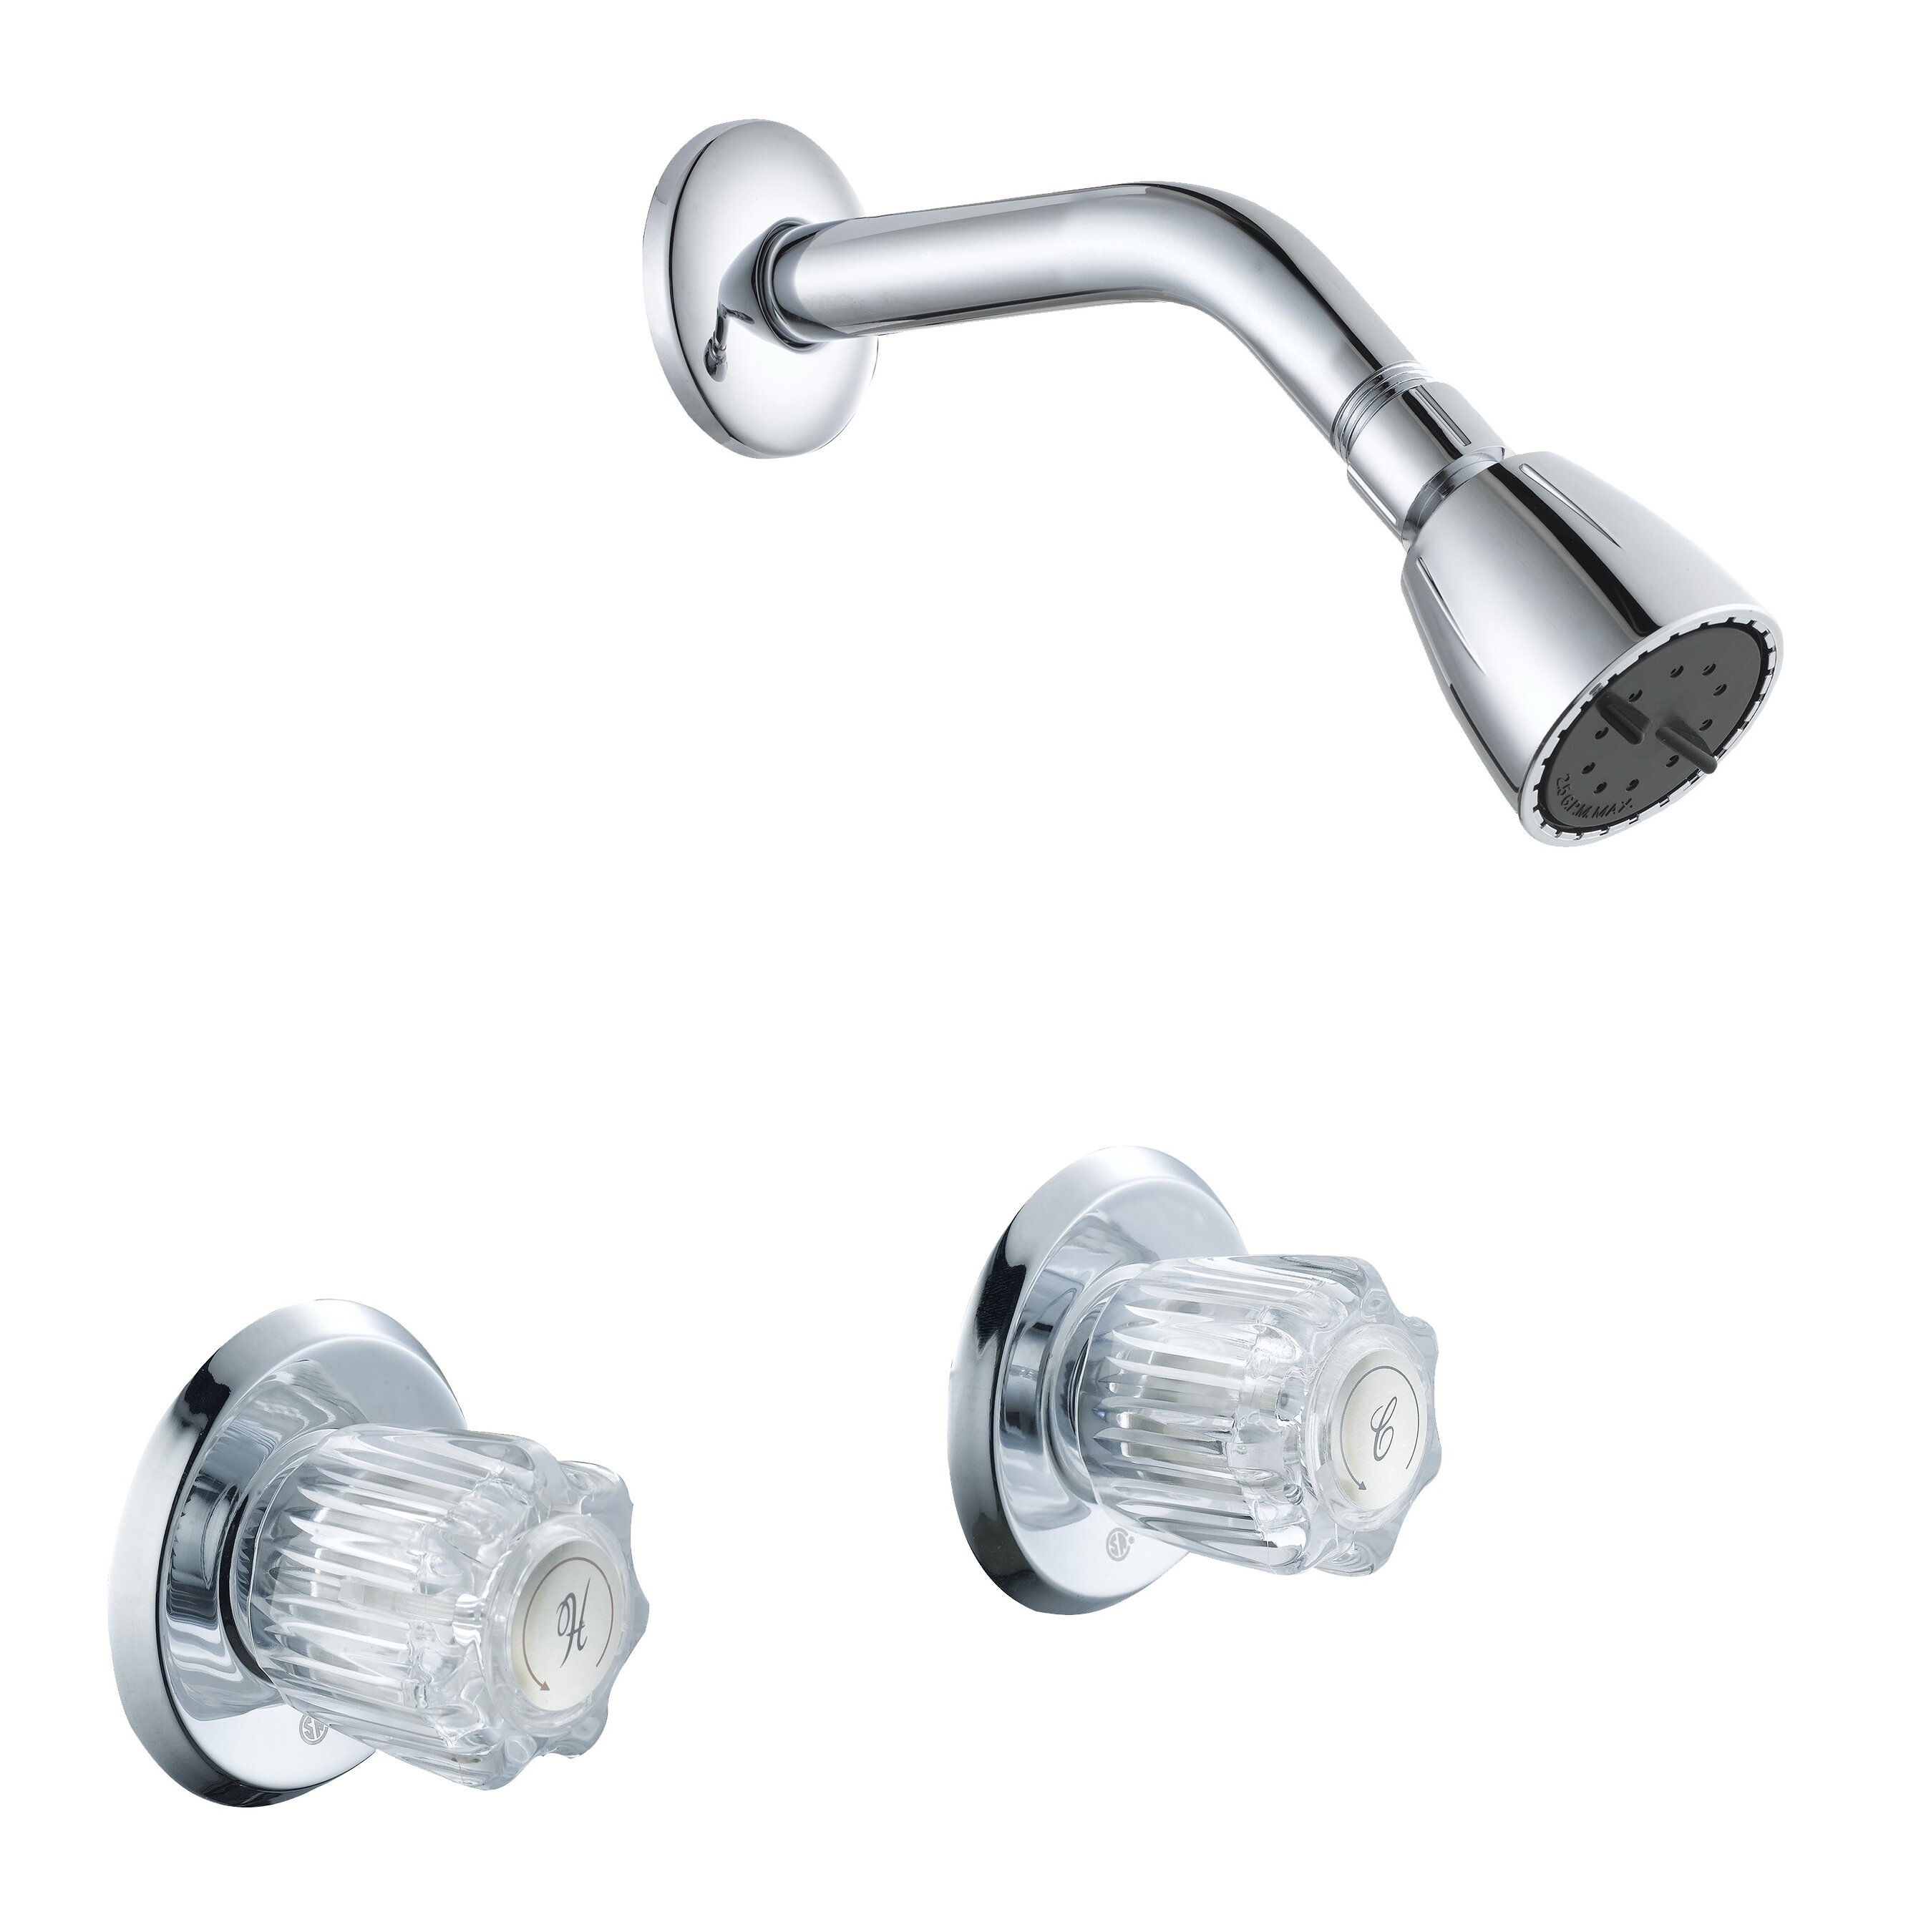 Aqua Plumb 2 Handle Temperature Control Shower Faucet Wayfair